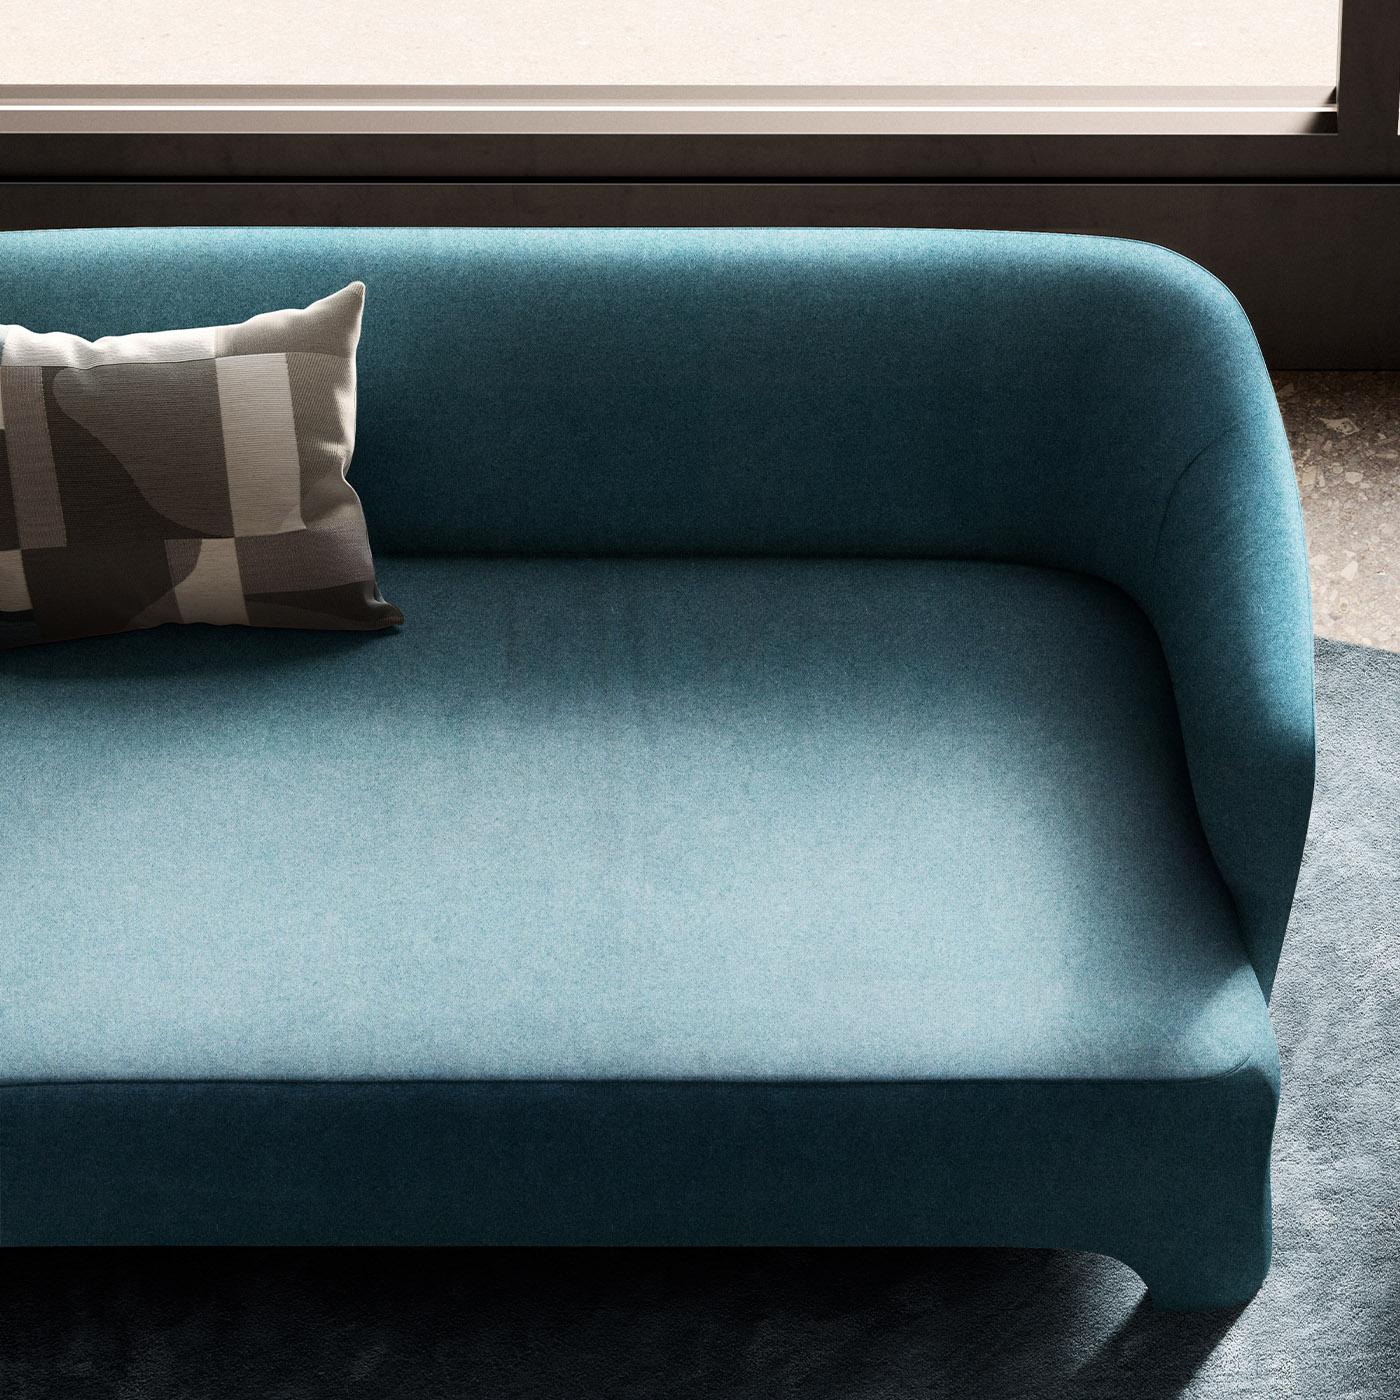 Dieses Sofa mit seinem faszinierenden blauen Farbton und seinem zeitgenössischen Flair ist ein ikonisches Design von Corrado Corradi Dell'Acqua und eine ideale Ergänzung für eine raffinierte Einrichtung. Die aus Holz und feuerfestem Schaumstoff